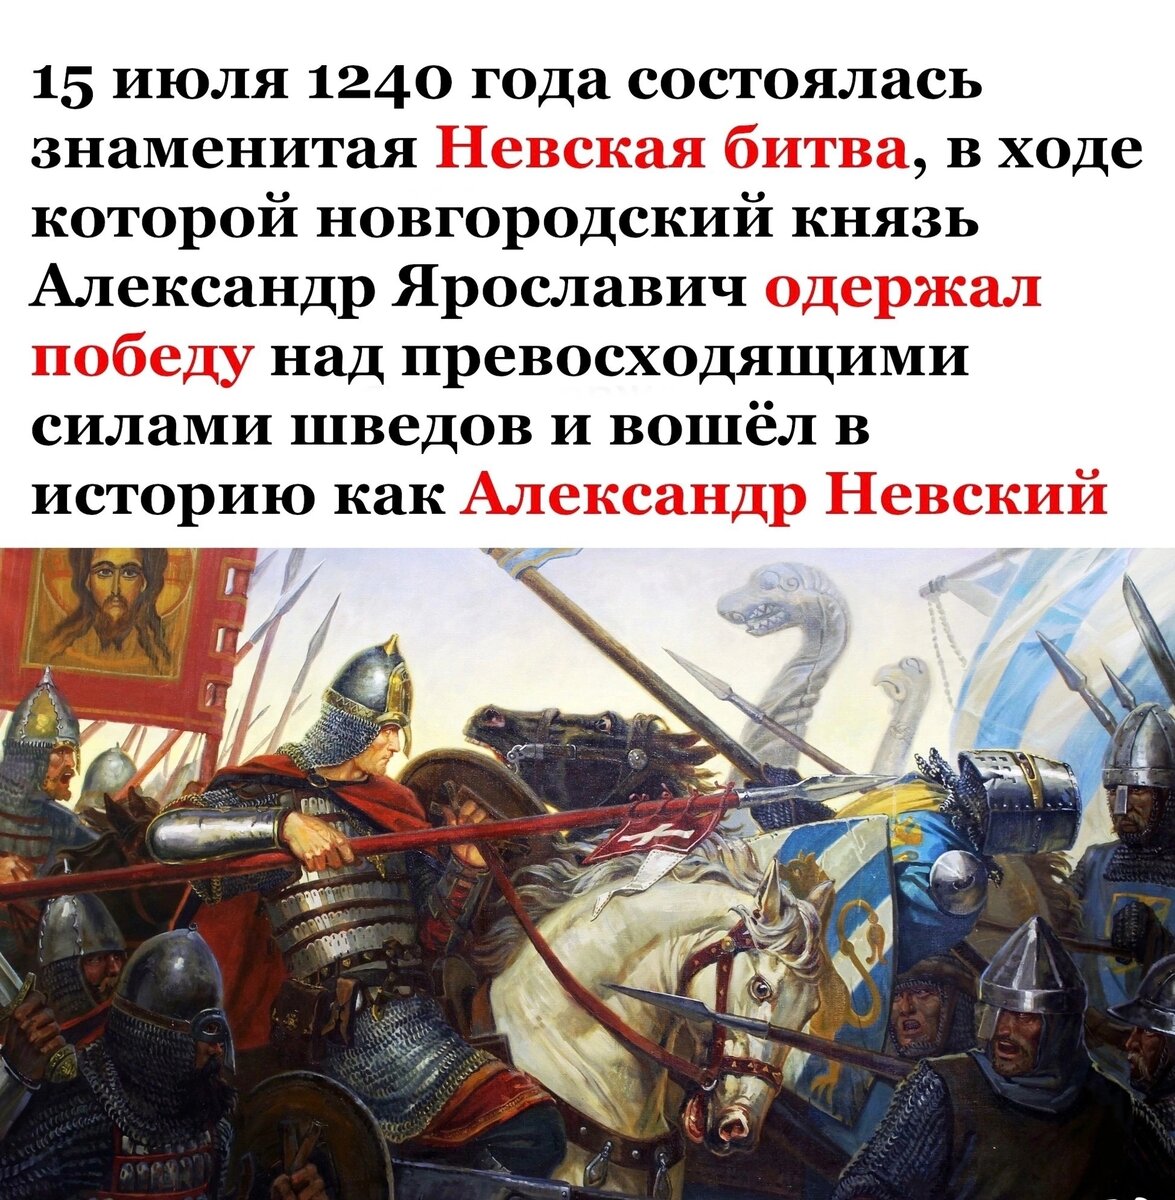 Кто участвовал в невской битве. 15 Июля 1240 года Невская битва. 1240 Год Невская битва. Невское сражение 1240 год.